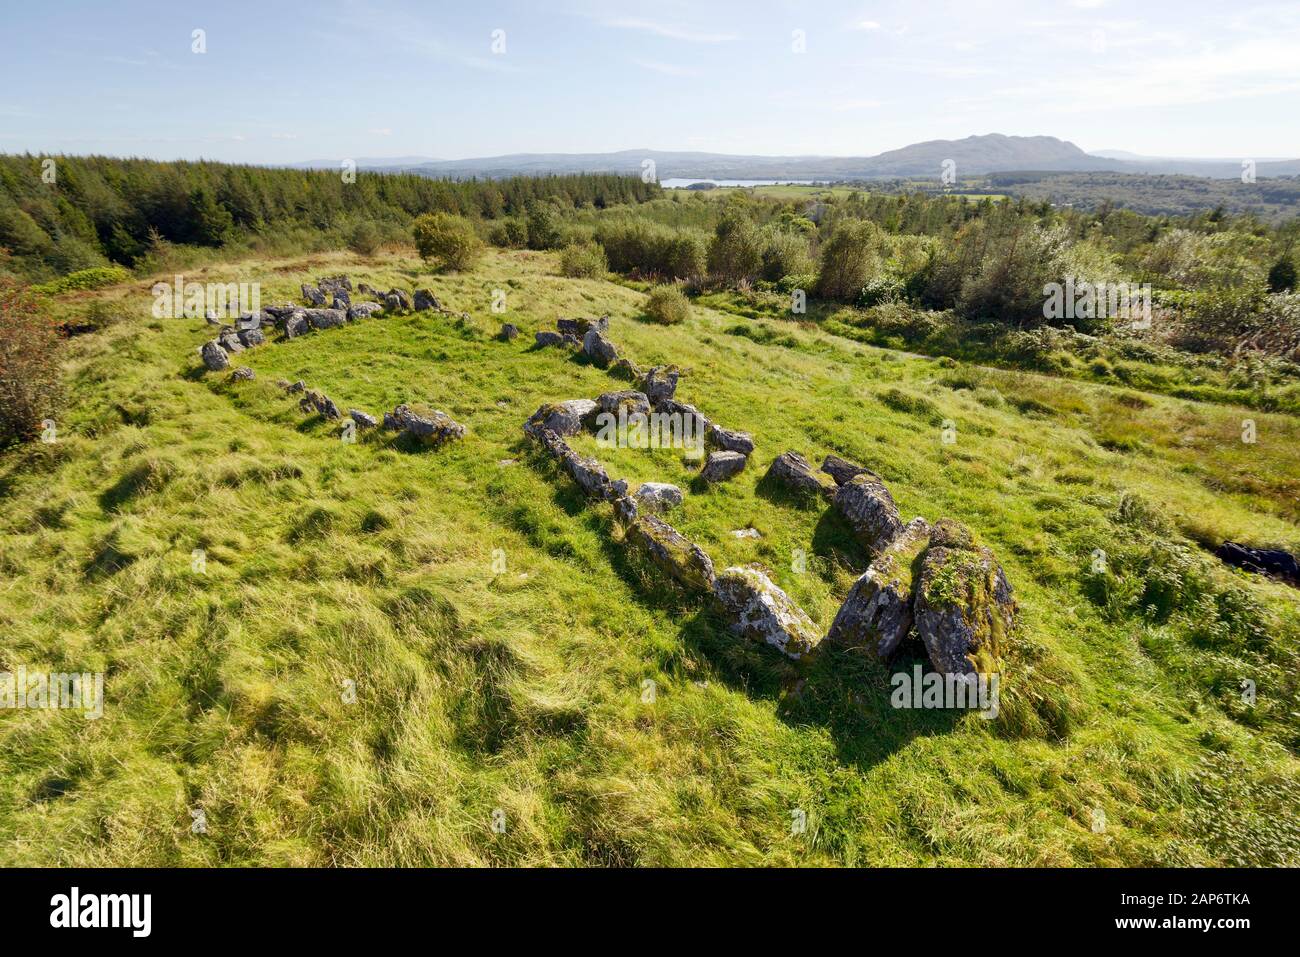 Deerpark court Tomb site de tombe néolithique alias Magherahanrush. N.E. de Colgagh Lough, Sligo, Irlande. Chambres funéraires à chaque extrémité de la cour ovale centrale Banque D'Images